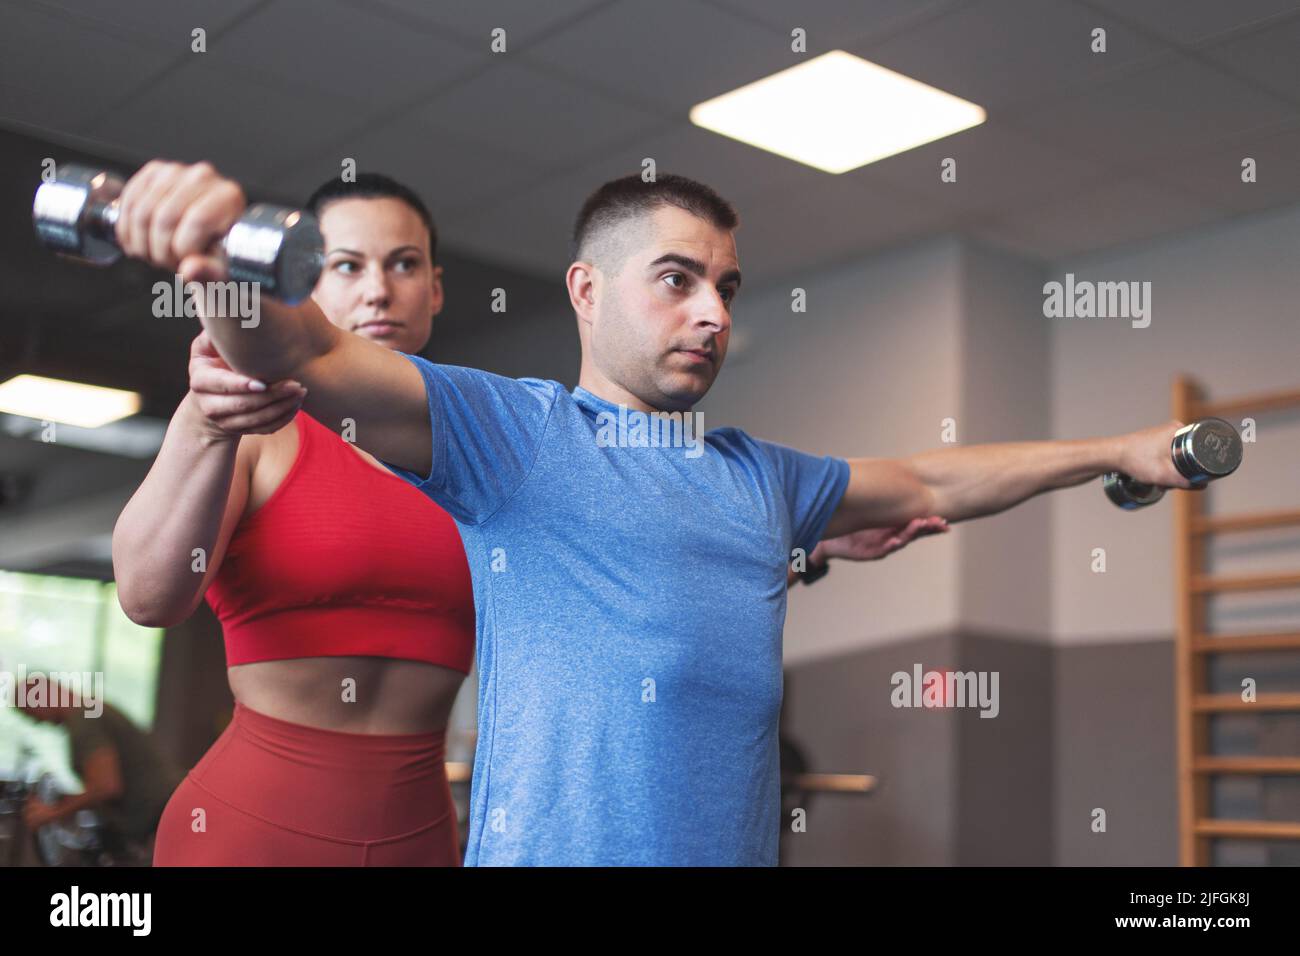 Mujer entrenador personal caucásica que sostiene el codo de los clientes durante el entrenamiento por las pesas Foto de stock